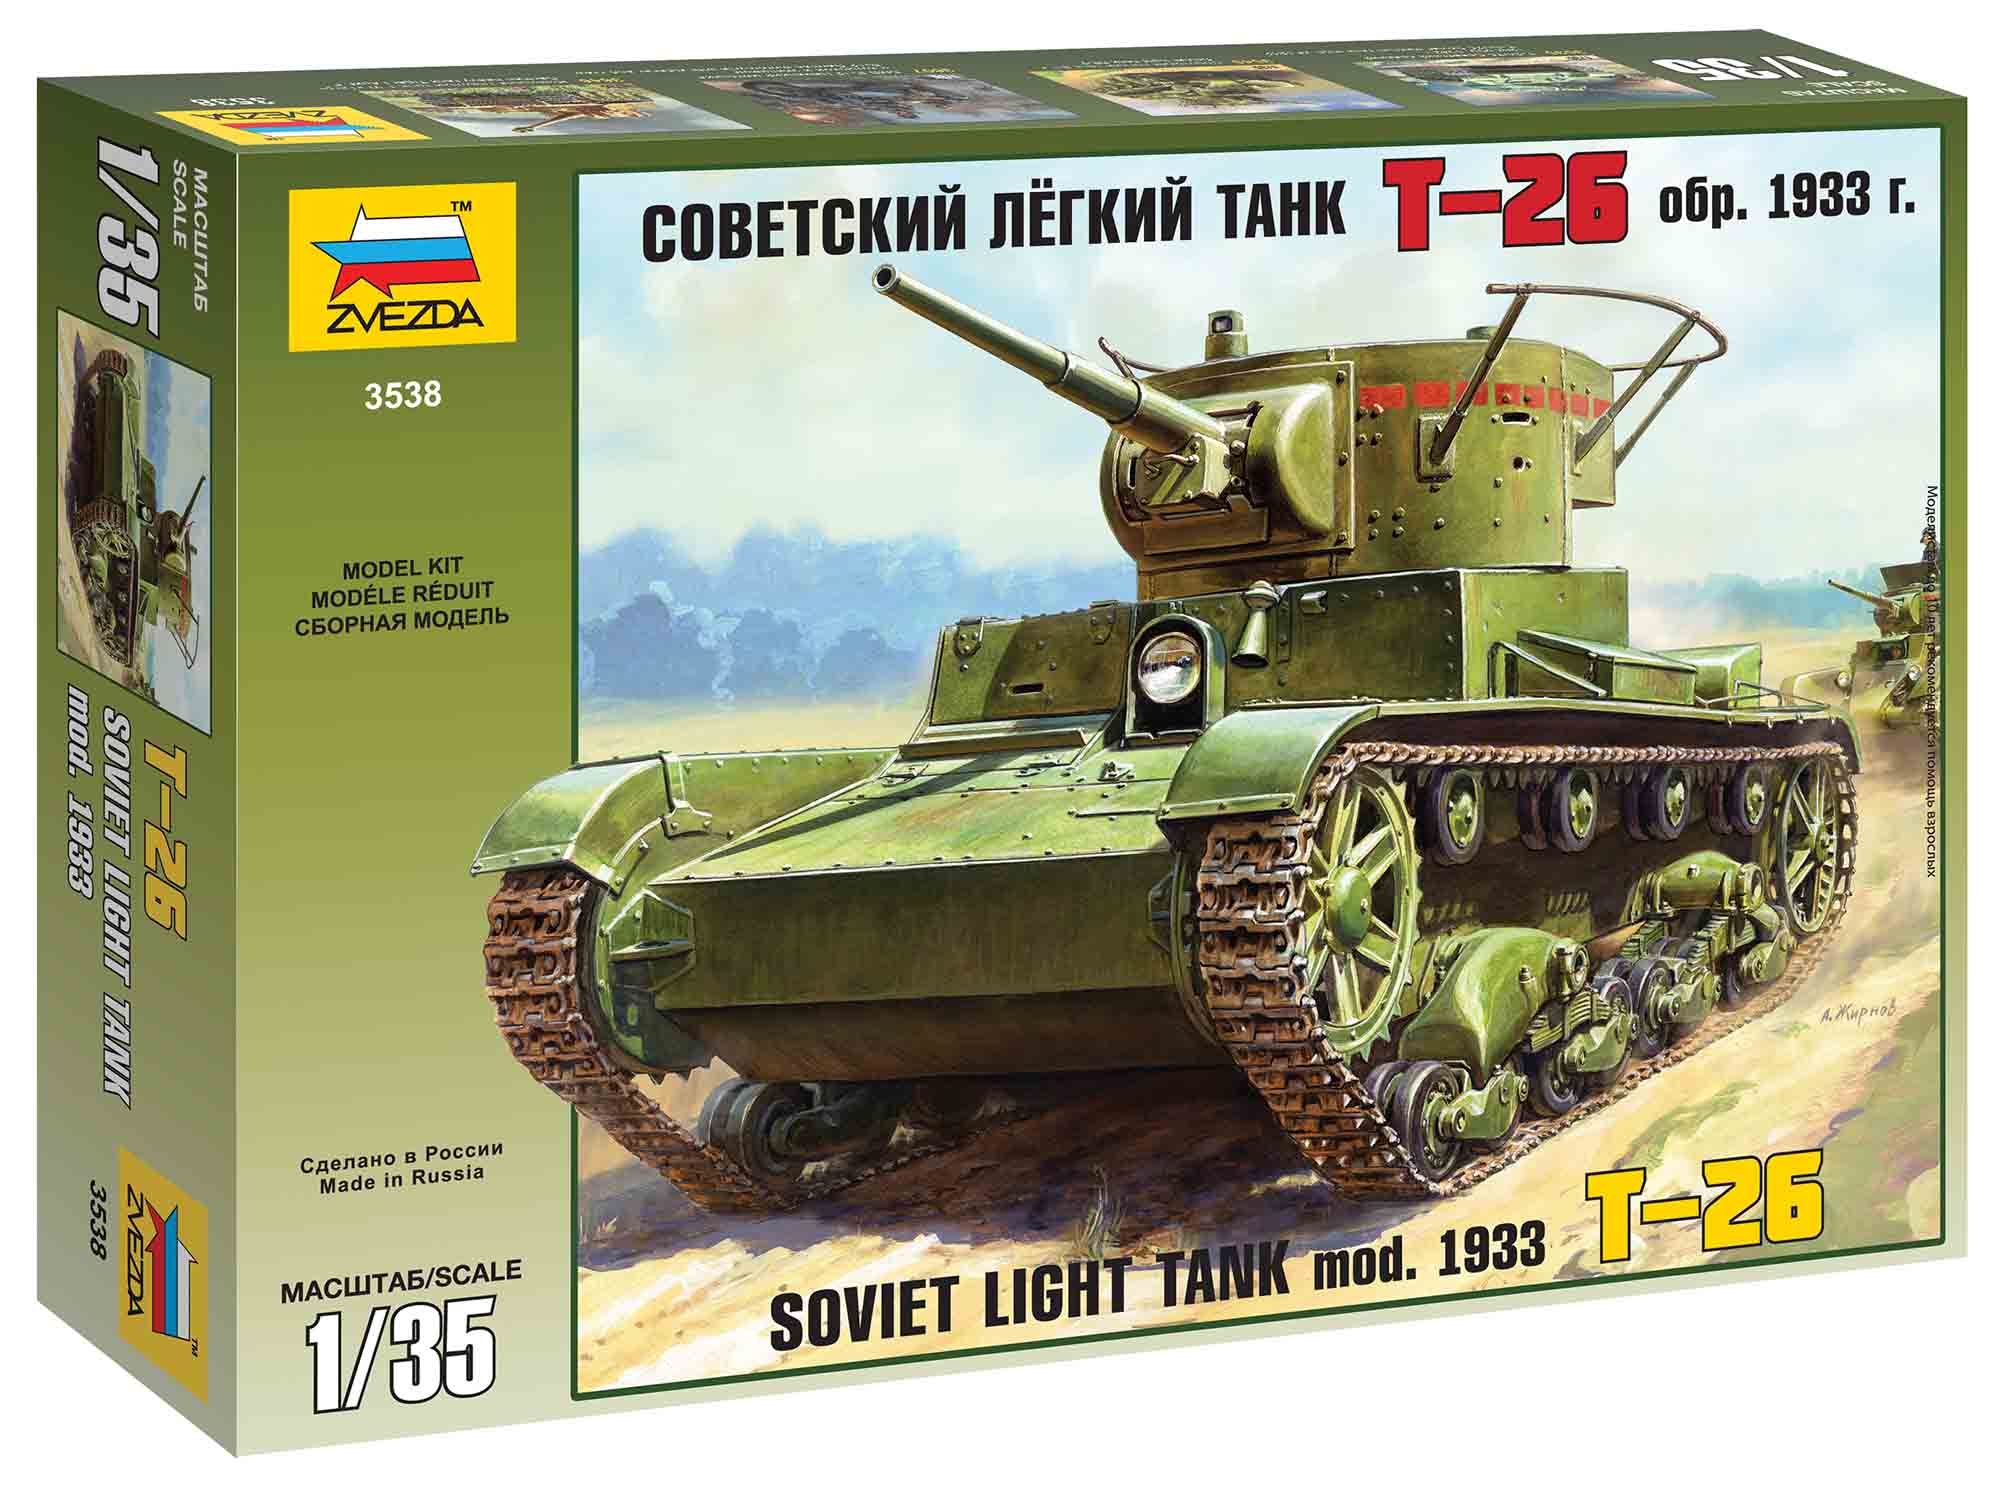 Zvezda Model Kit tank 3538 - T-26 mod. 1933 (1:35)